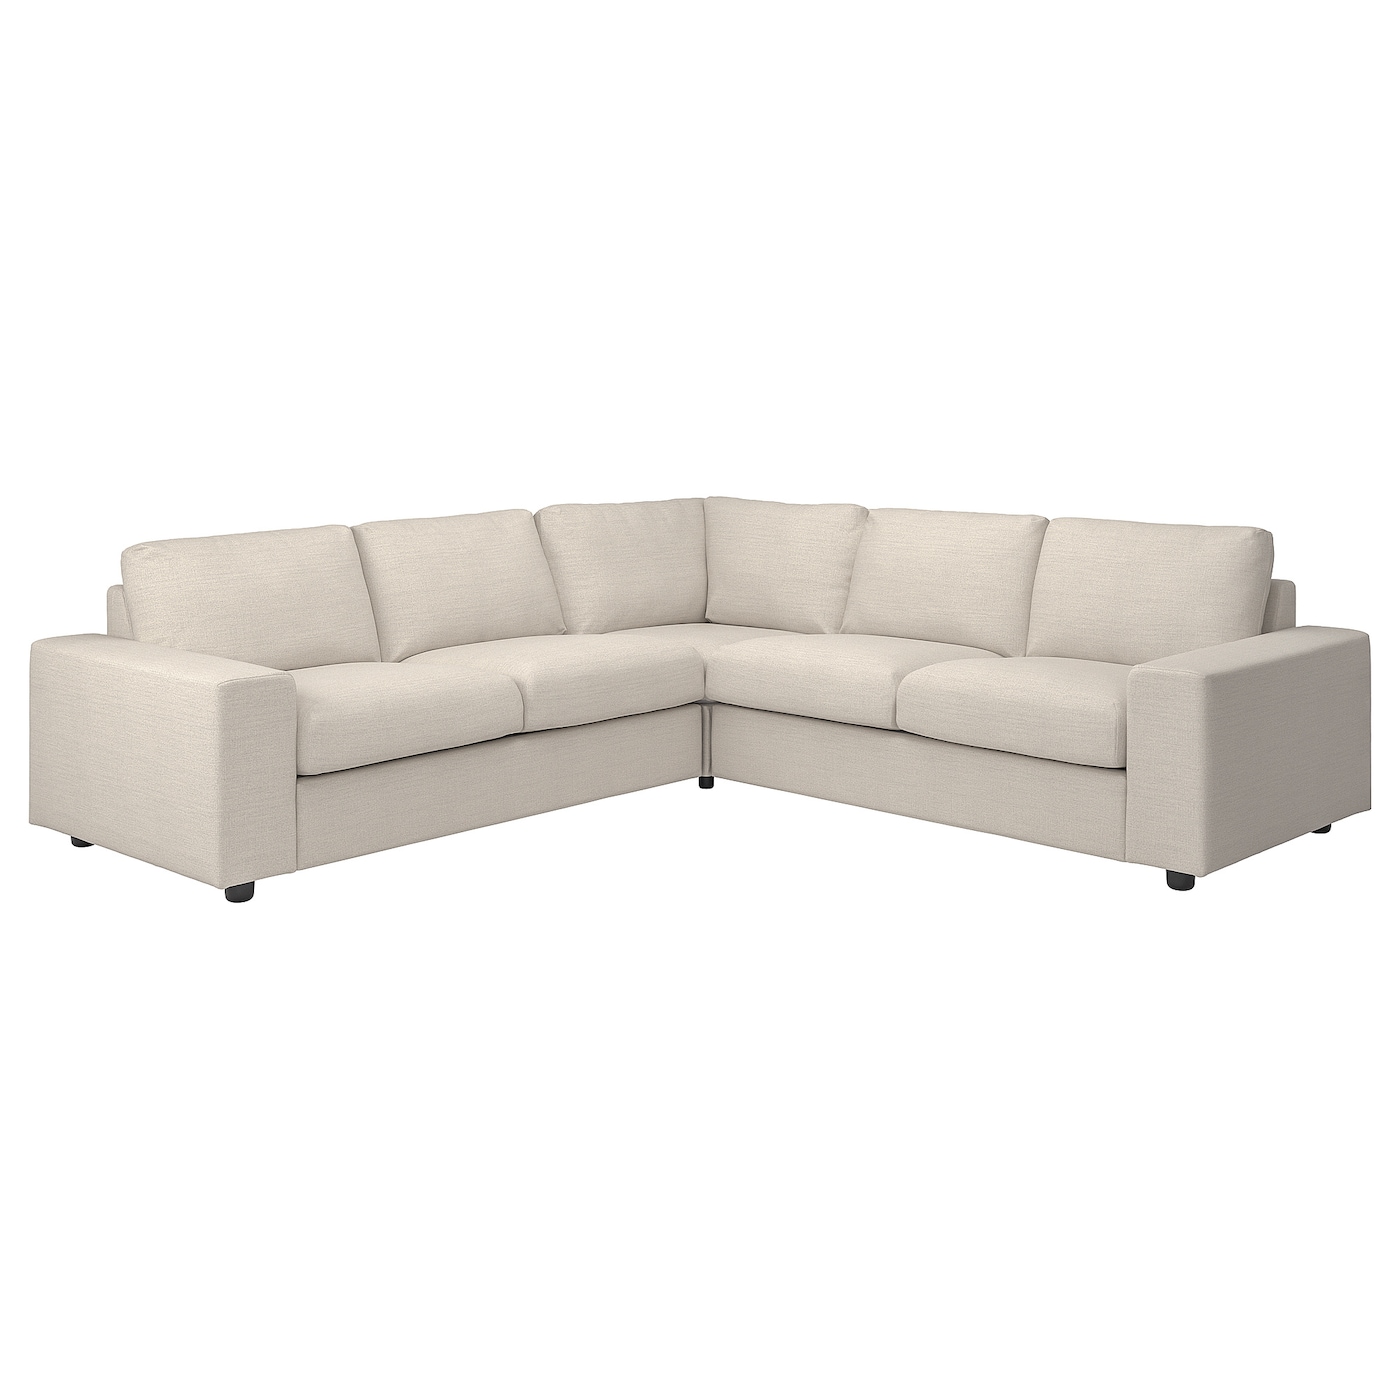 ВИМЛЕ 4-местный угловой диван, с широкими подлокотниками/Гуннаред бежевый VIMLE IKEA